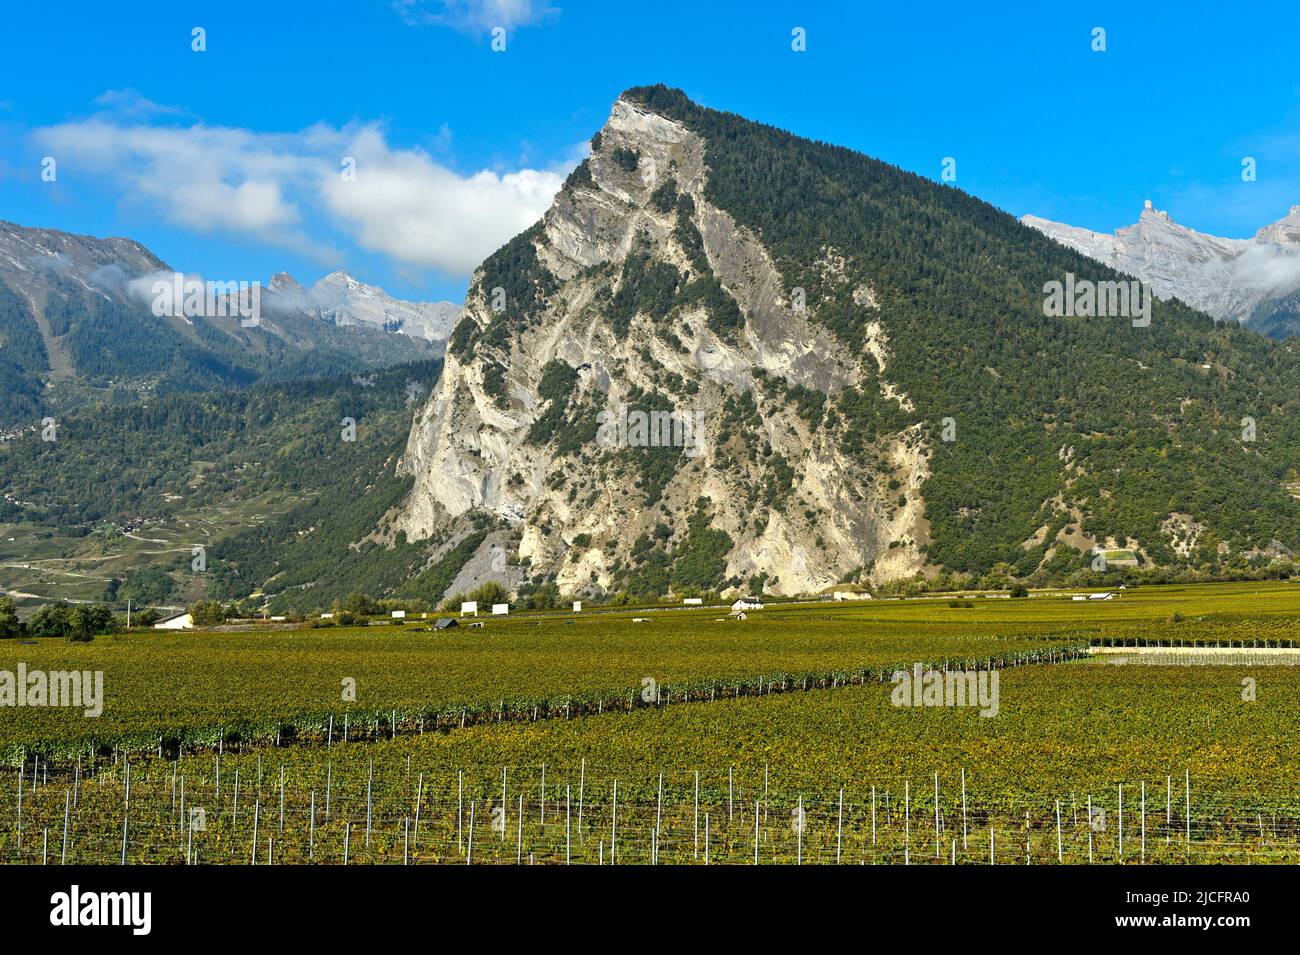 Le sommet de la montagne Ardeve surplombe la région viticole de Leytron, Valais, Suisse Banque D'Images